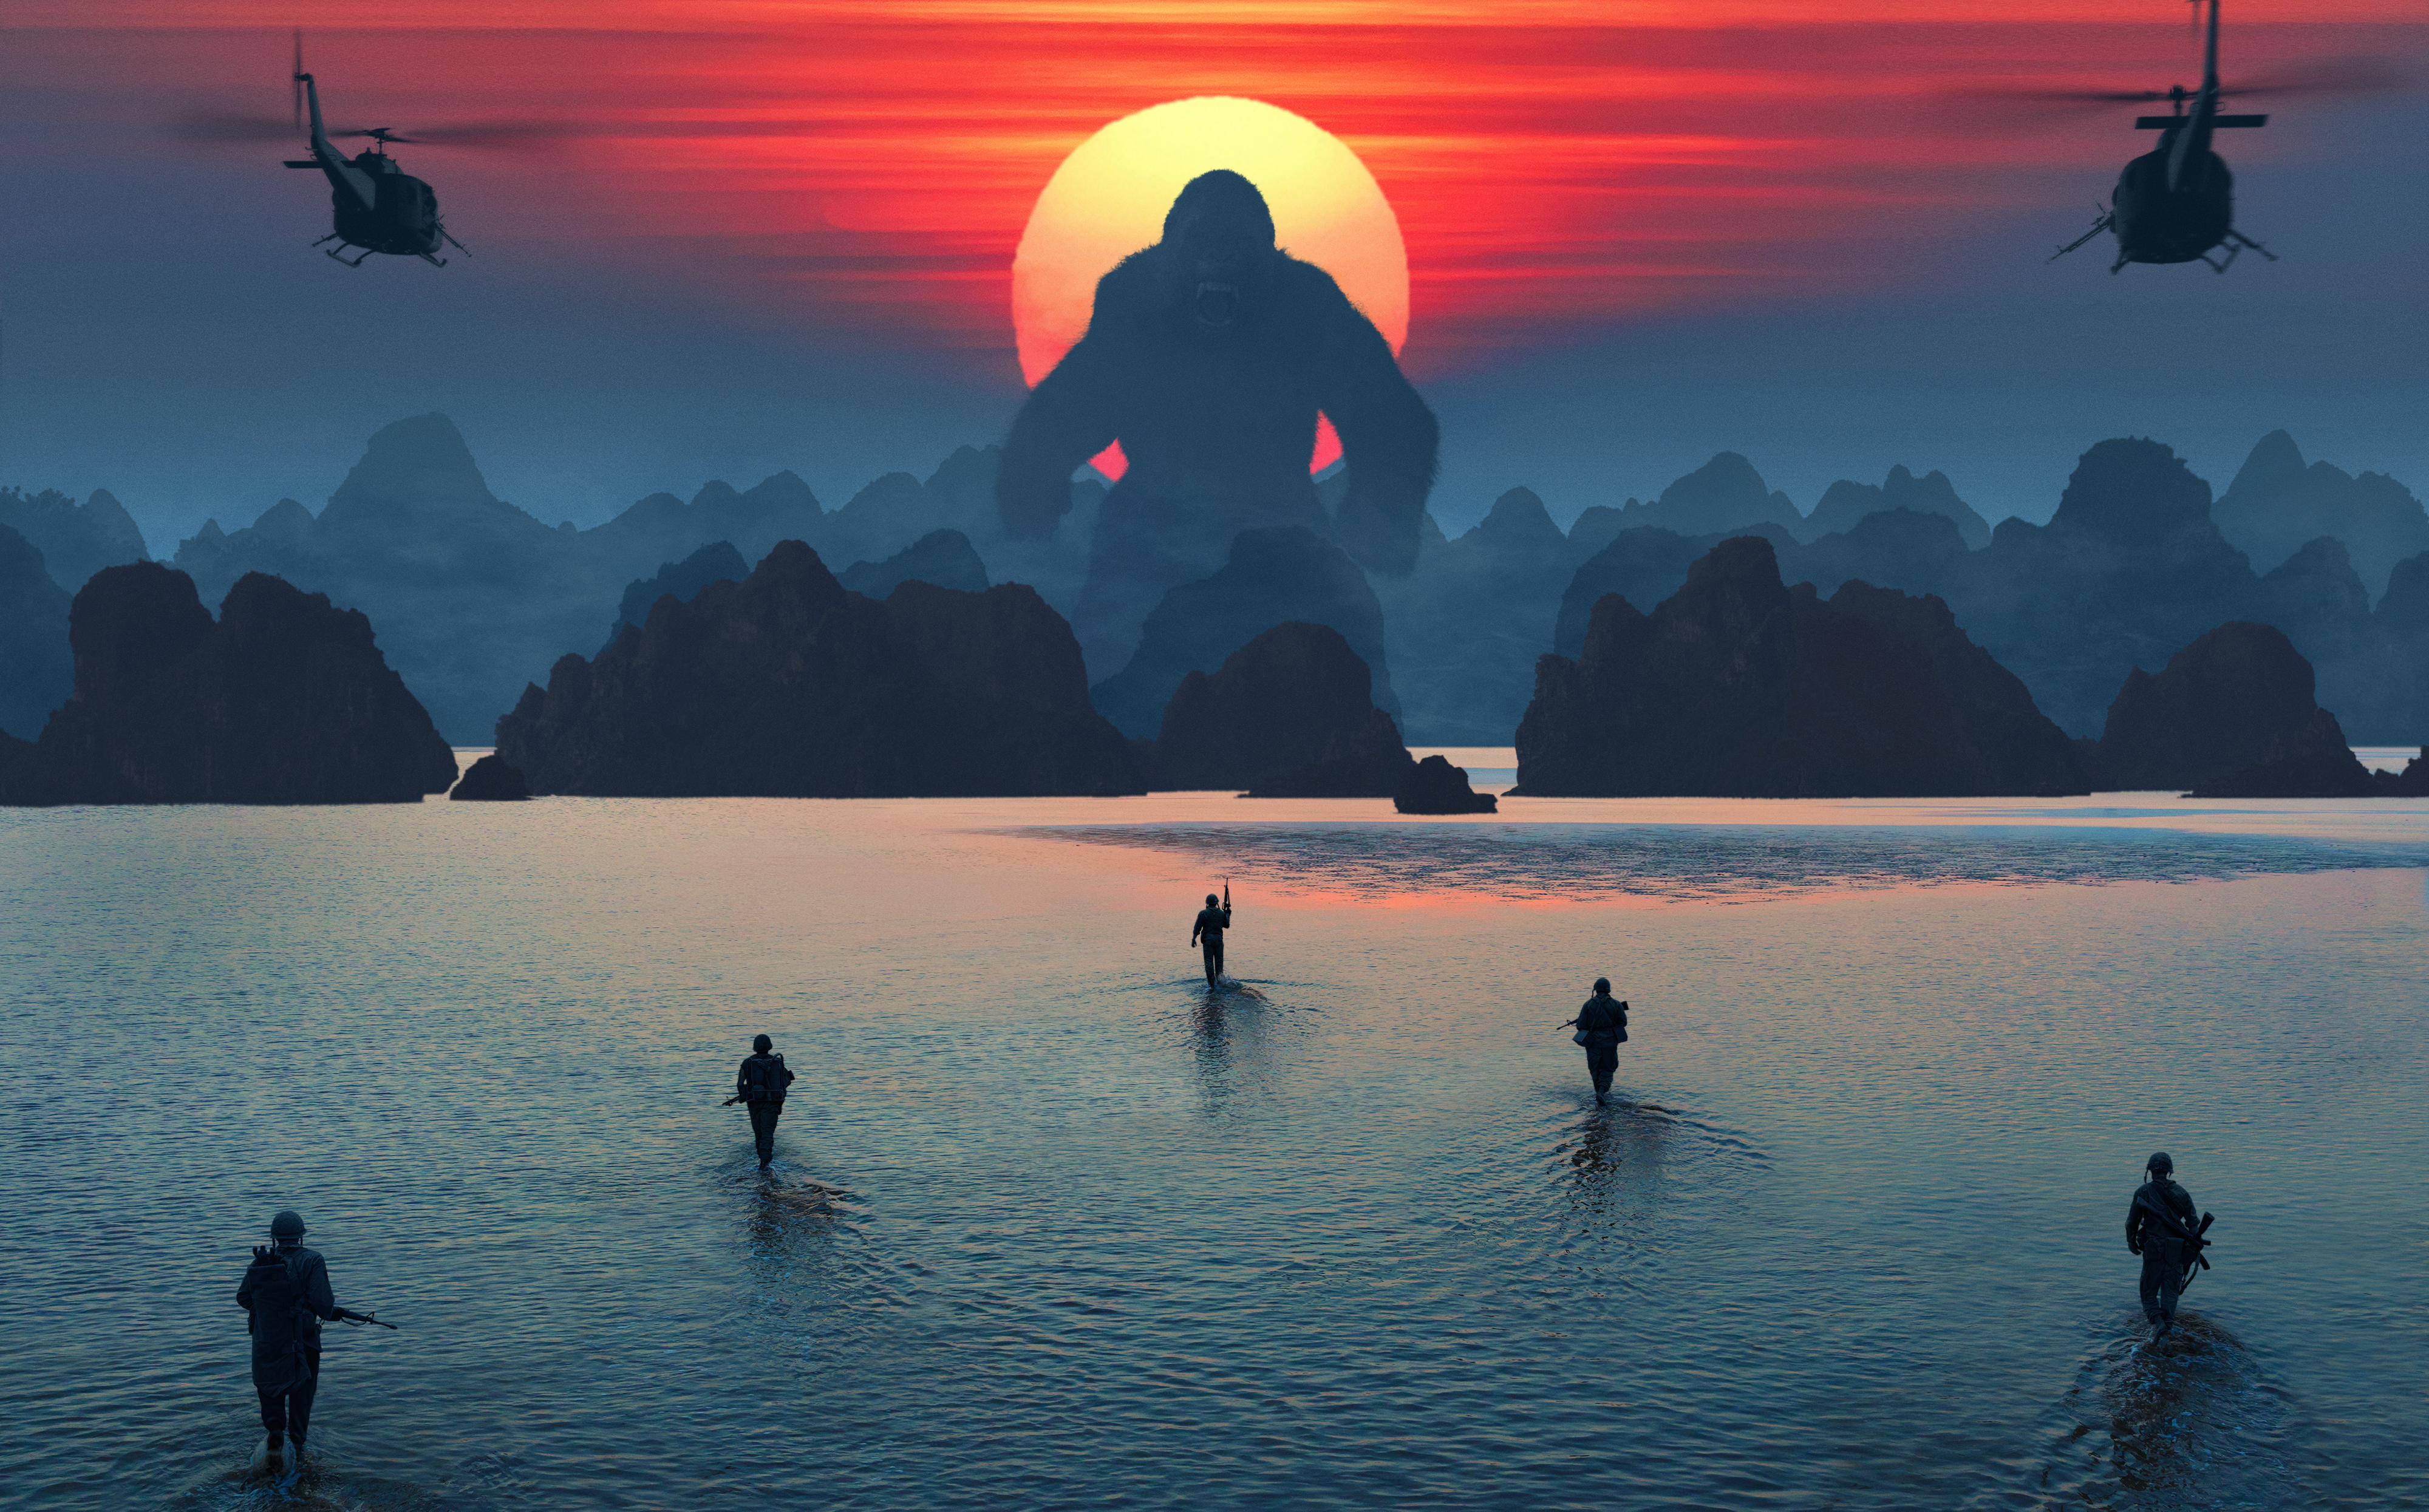 Movie Kong: Skull Island 4k Ultra HD Wallpaper